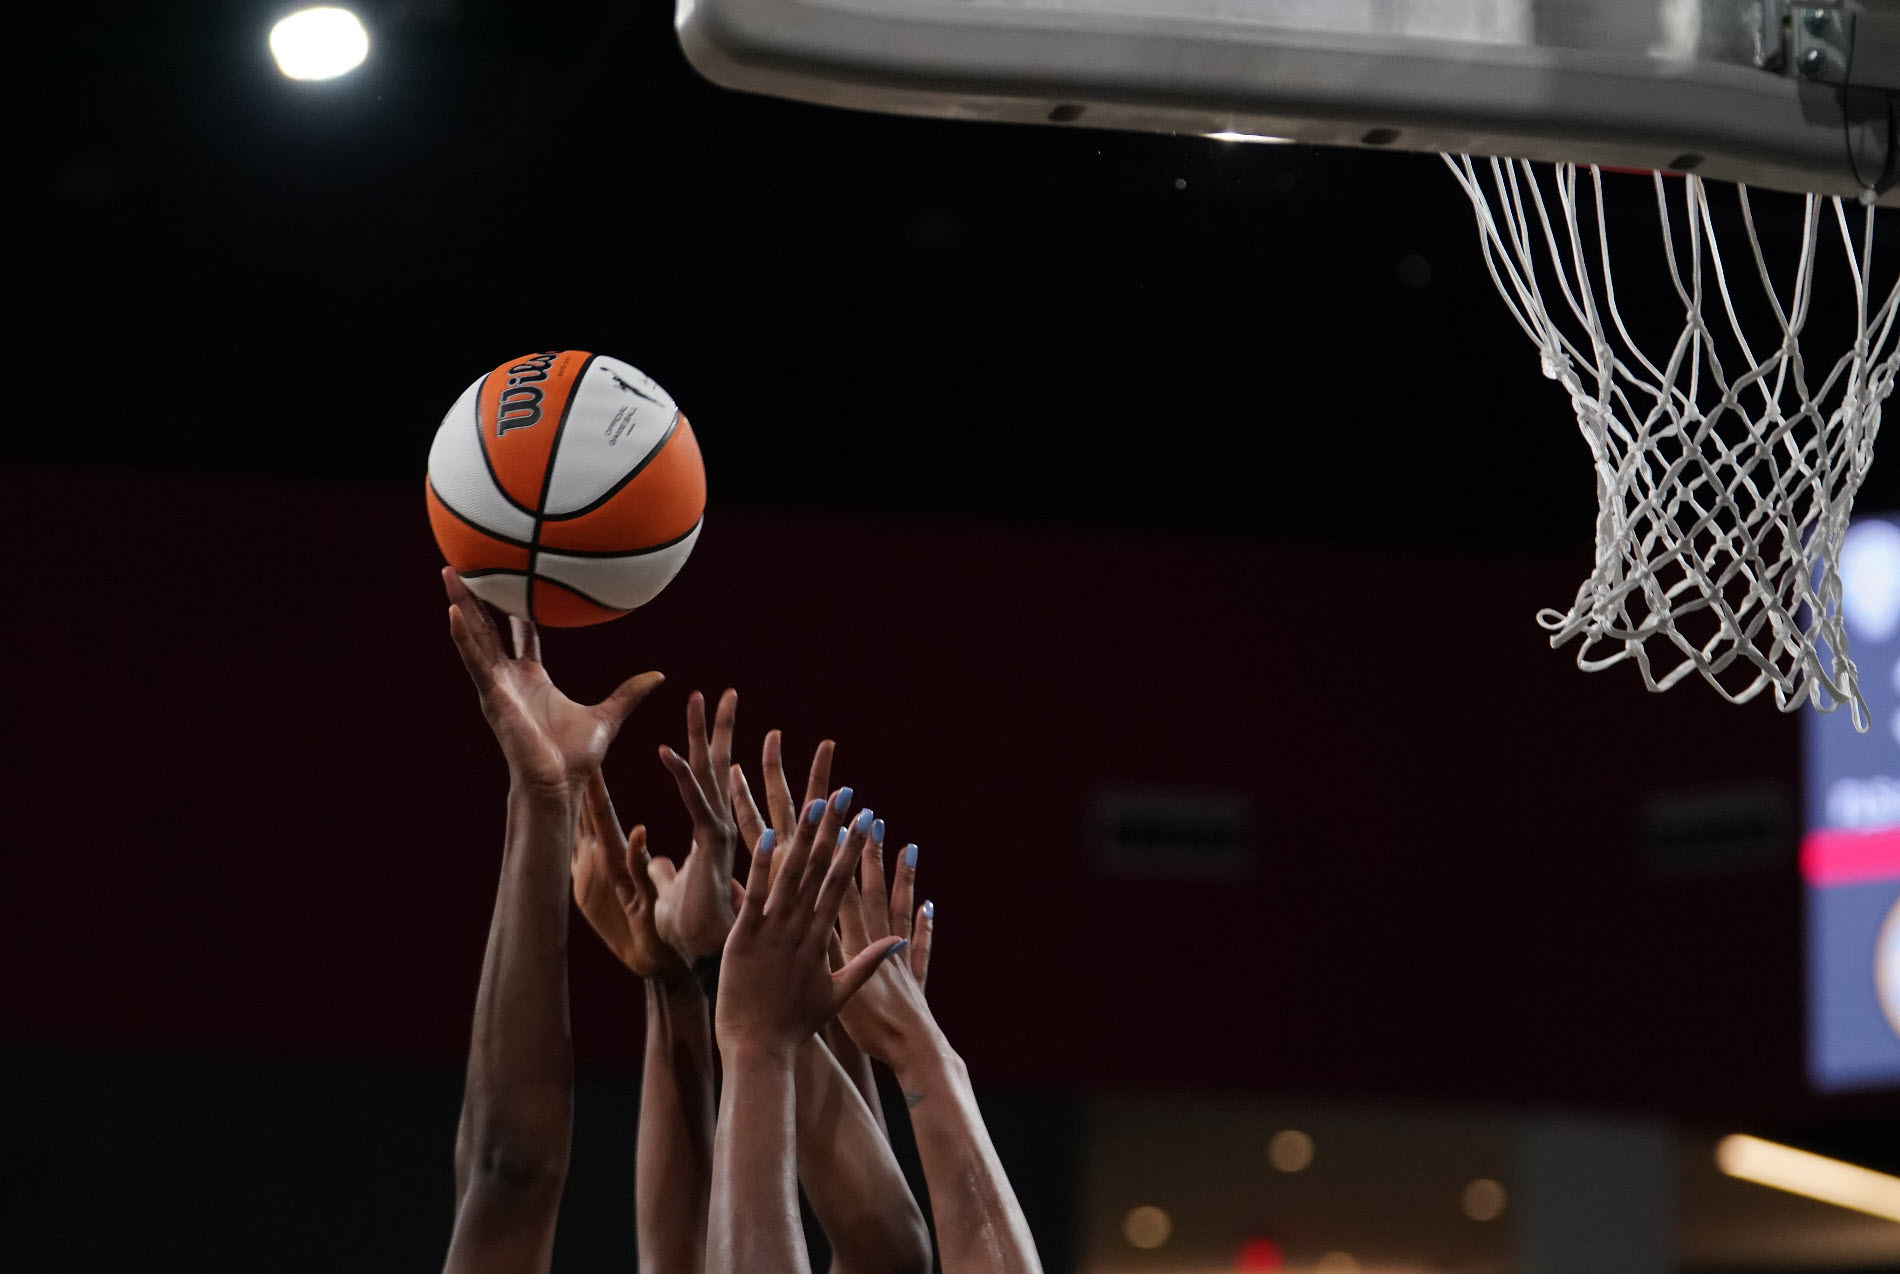 Women's hands striving to grab a rebound basket